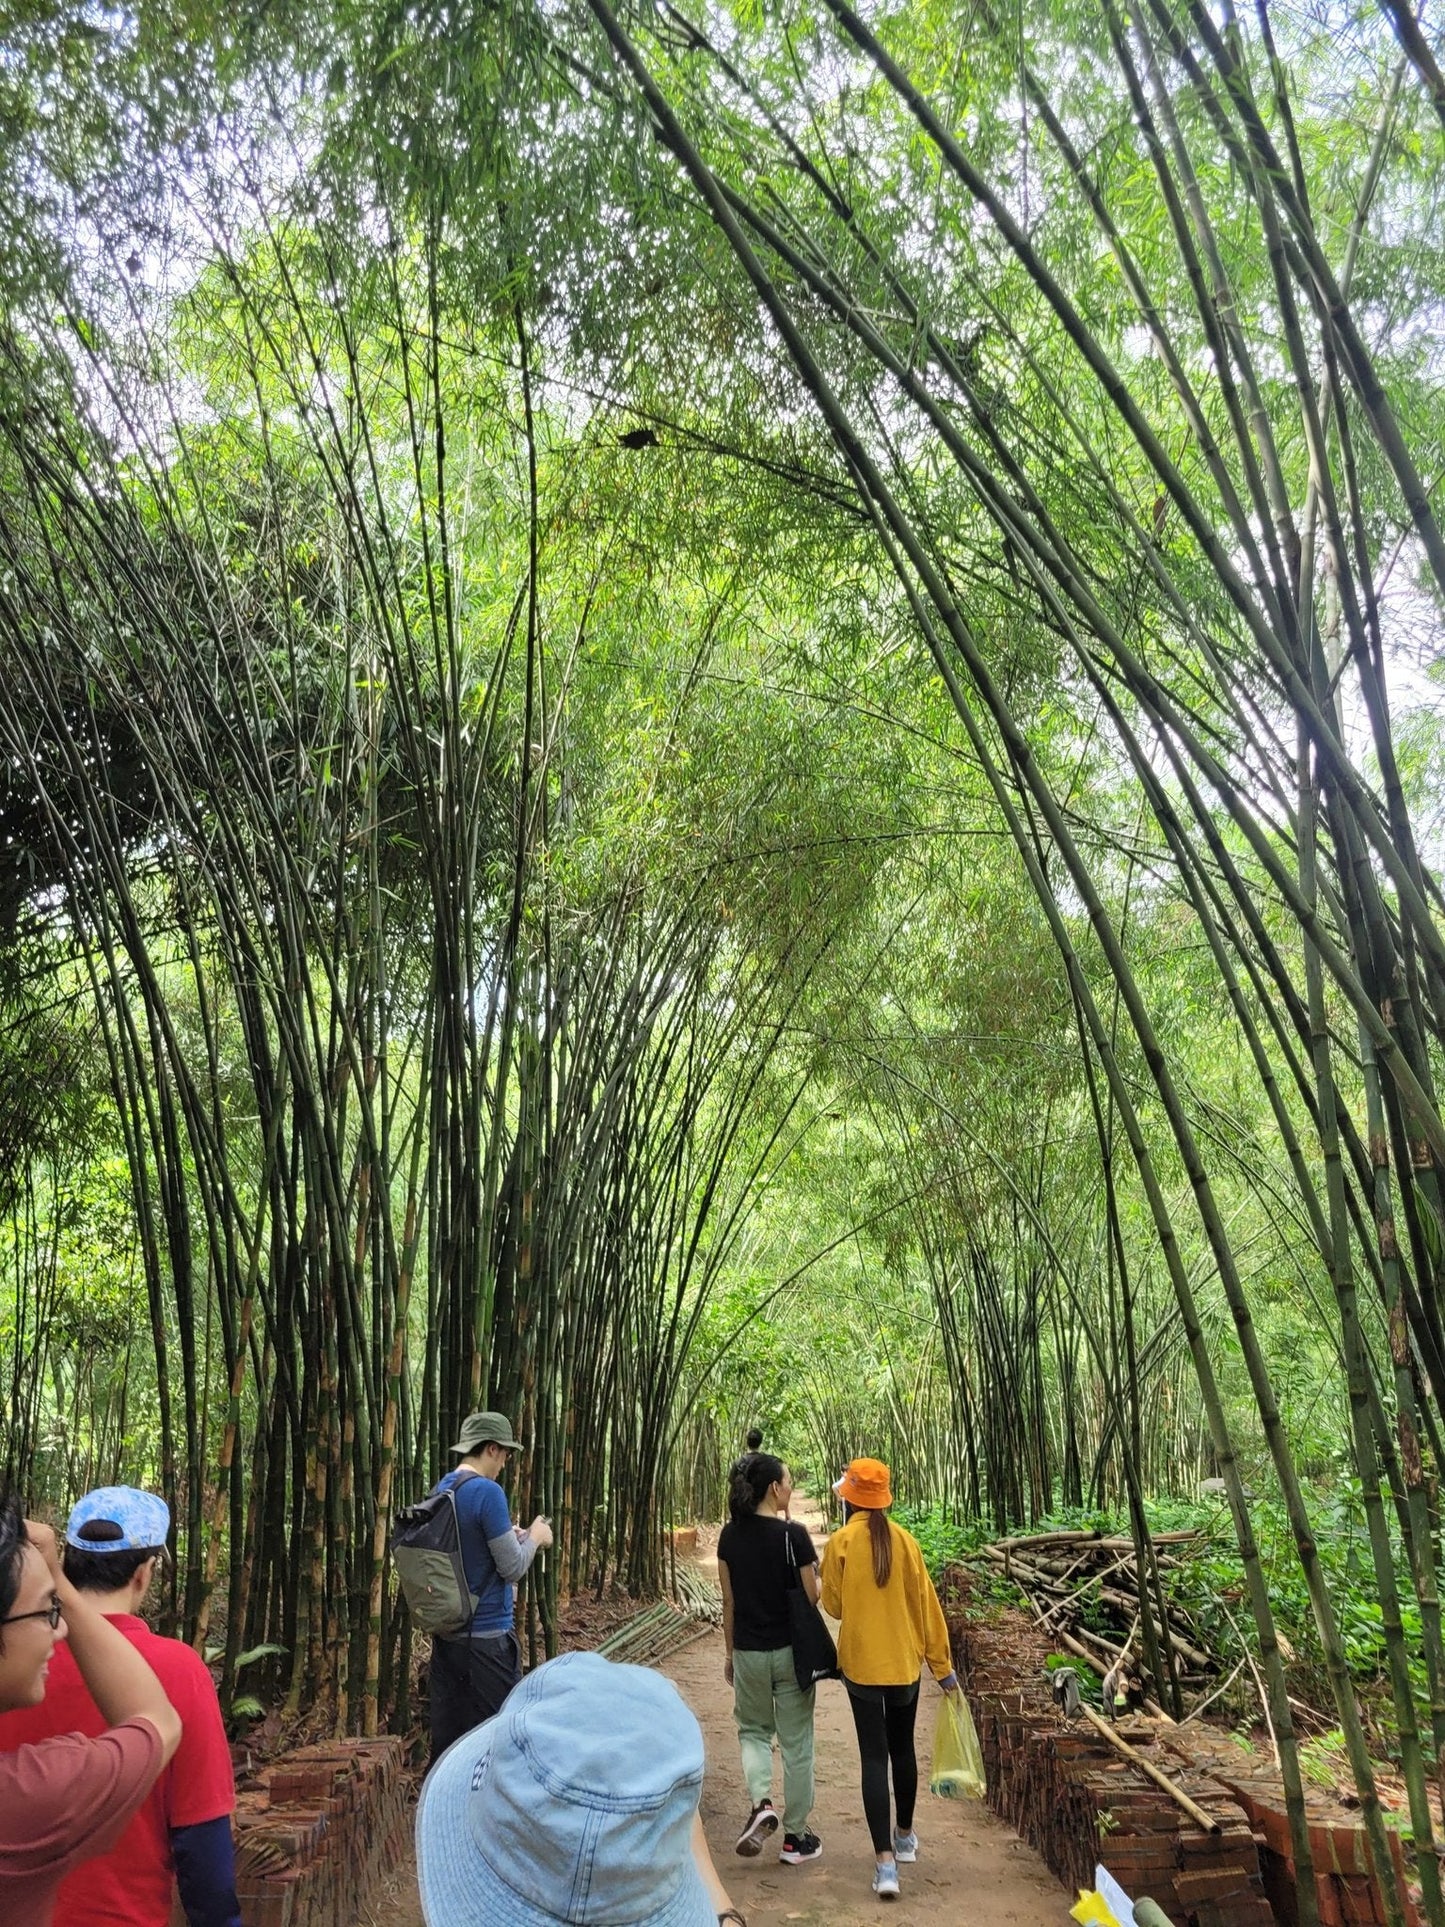 75B : (2 JOURS) Village de bambous : perdu dans la campagne paisible, lac Dau Tieng, région de Cu Chi